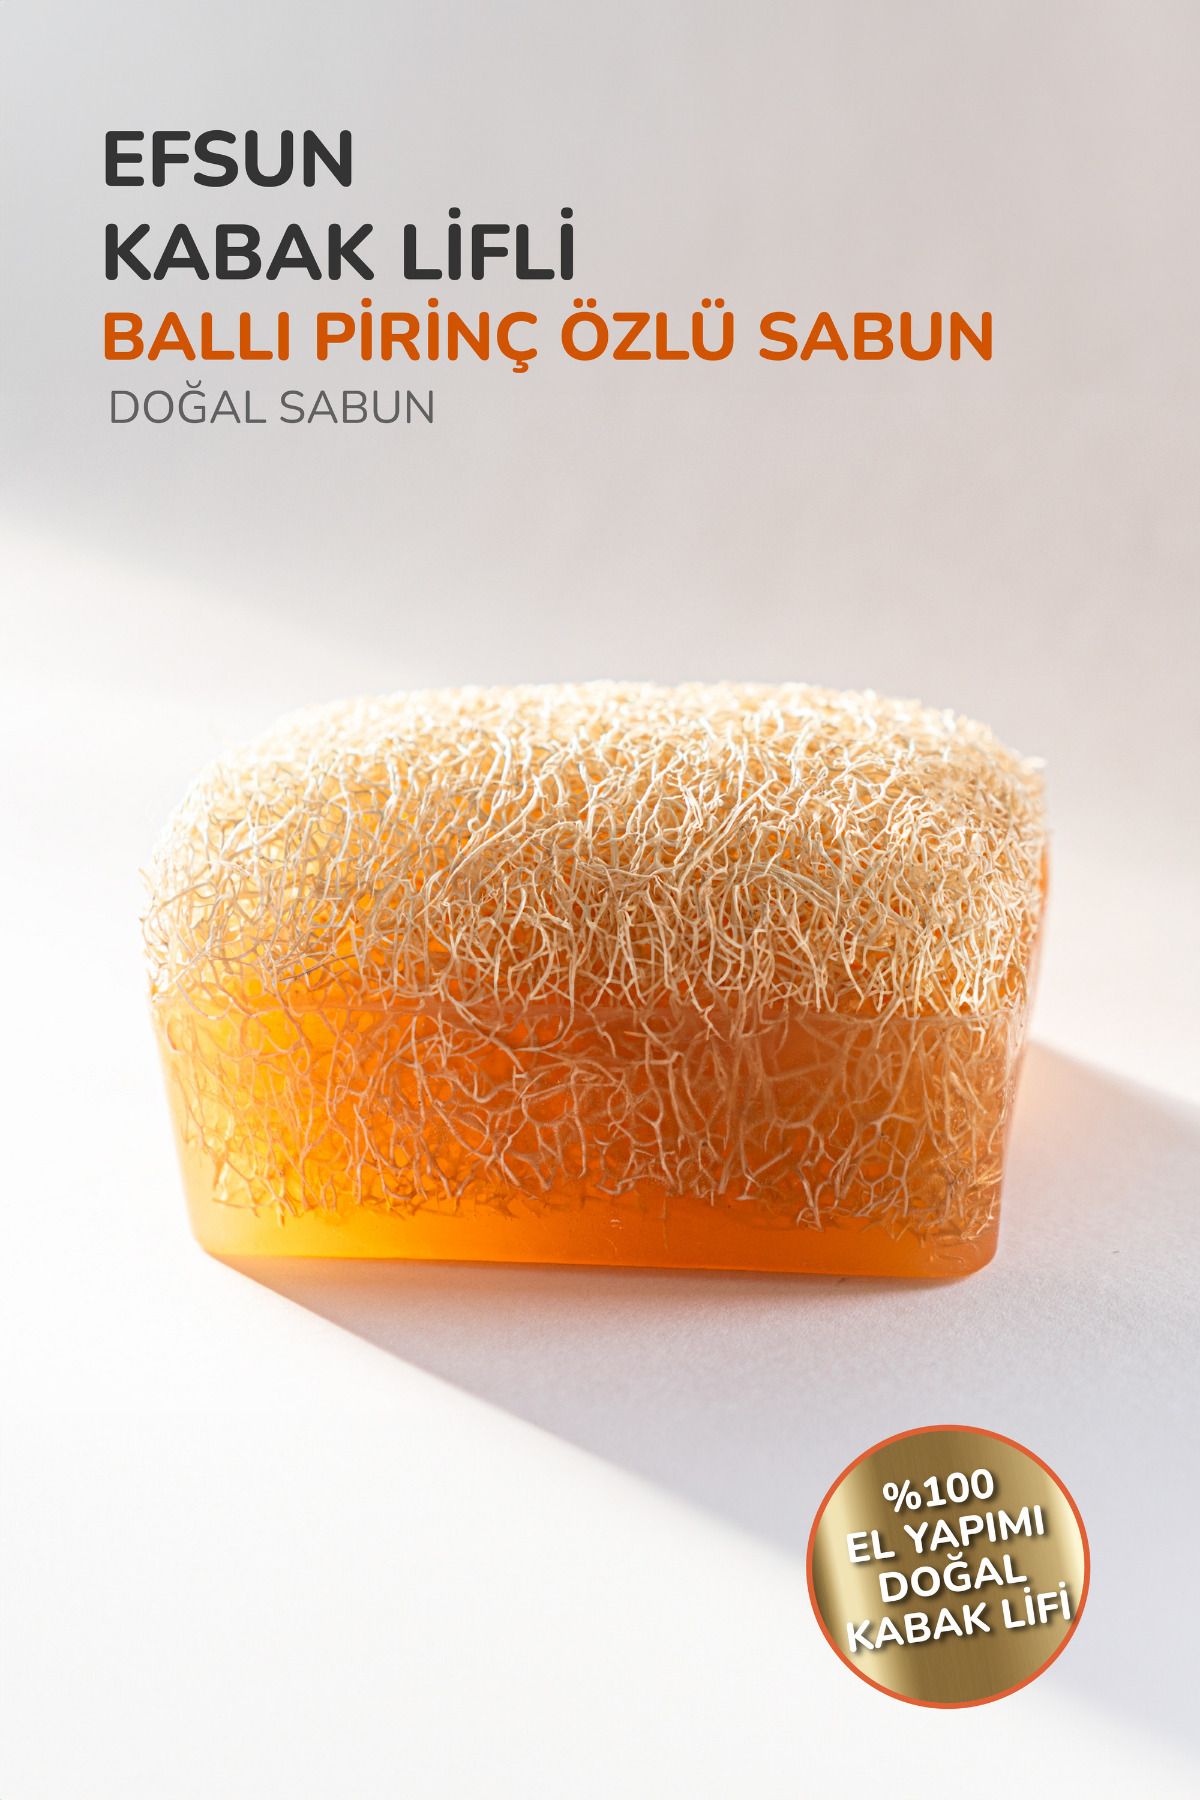 Efsun Premium %100 El Yapımı Doğal Kabak Lifli Ballı Pirinç Özlü Sabun